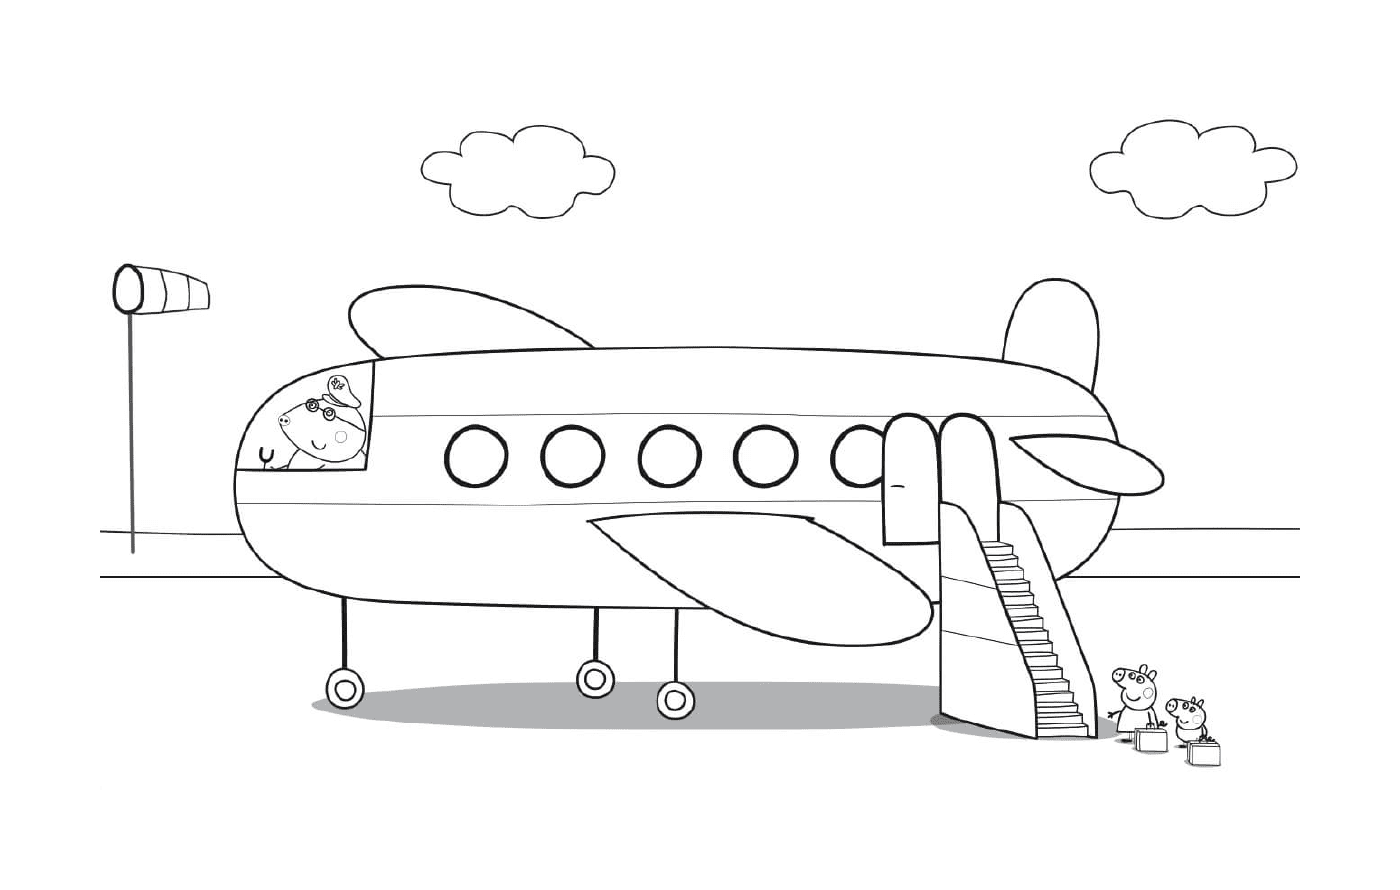  पेप्पा सूअर का परिवार हवाई जहाज़ से होता है 